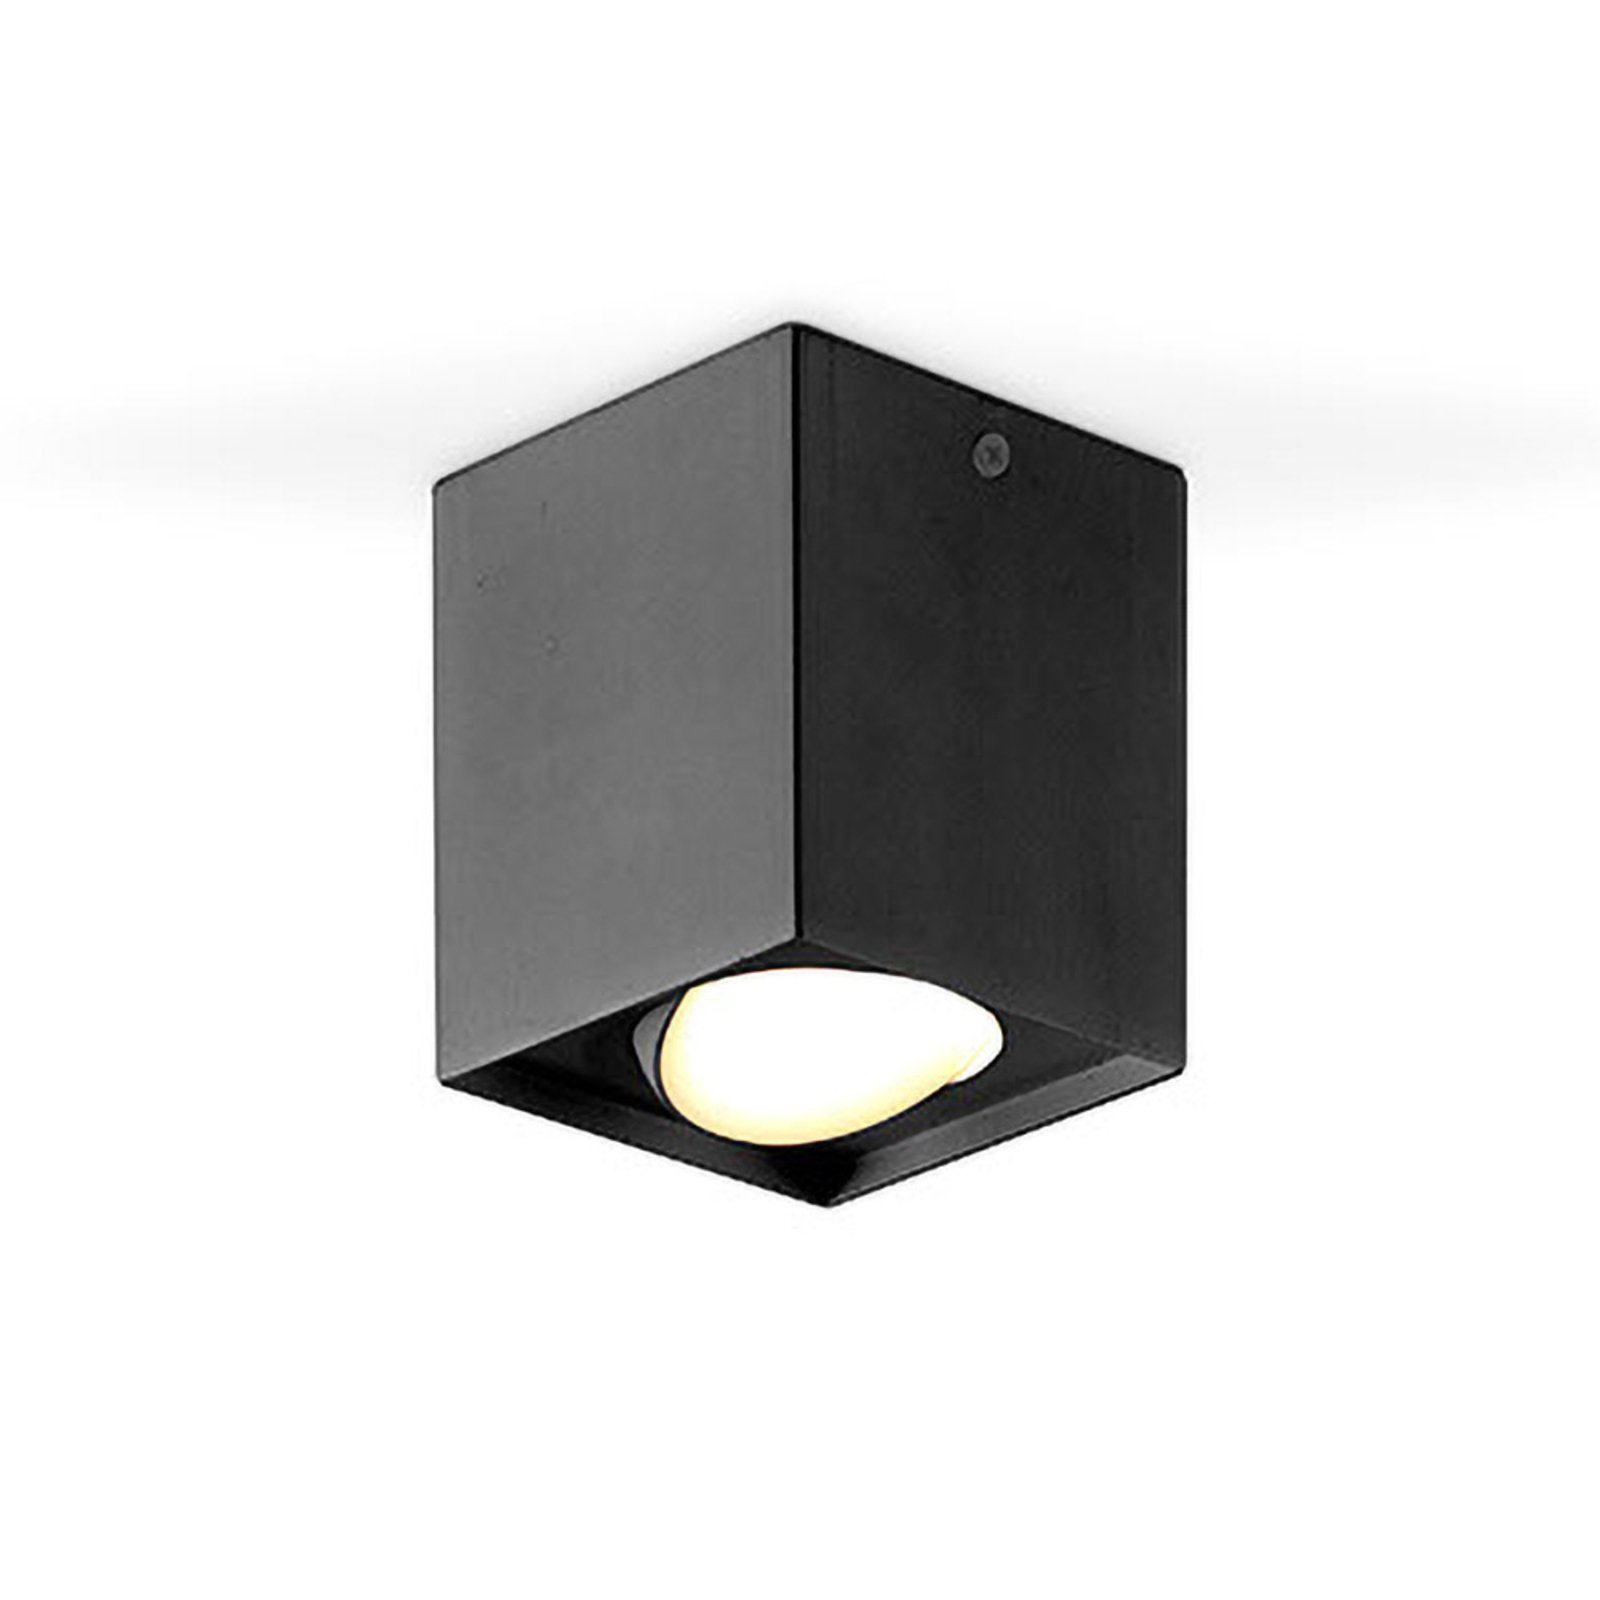 EVN Kardanus LED ceiling light, 9 x 9 cm, black